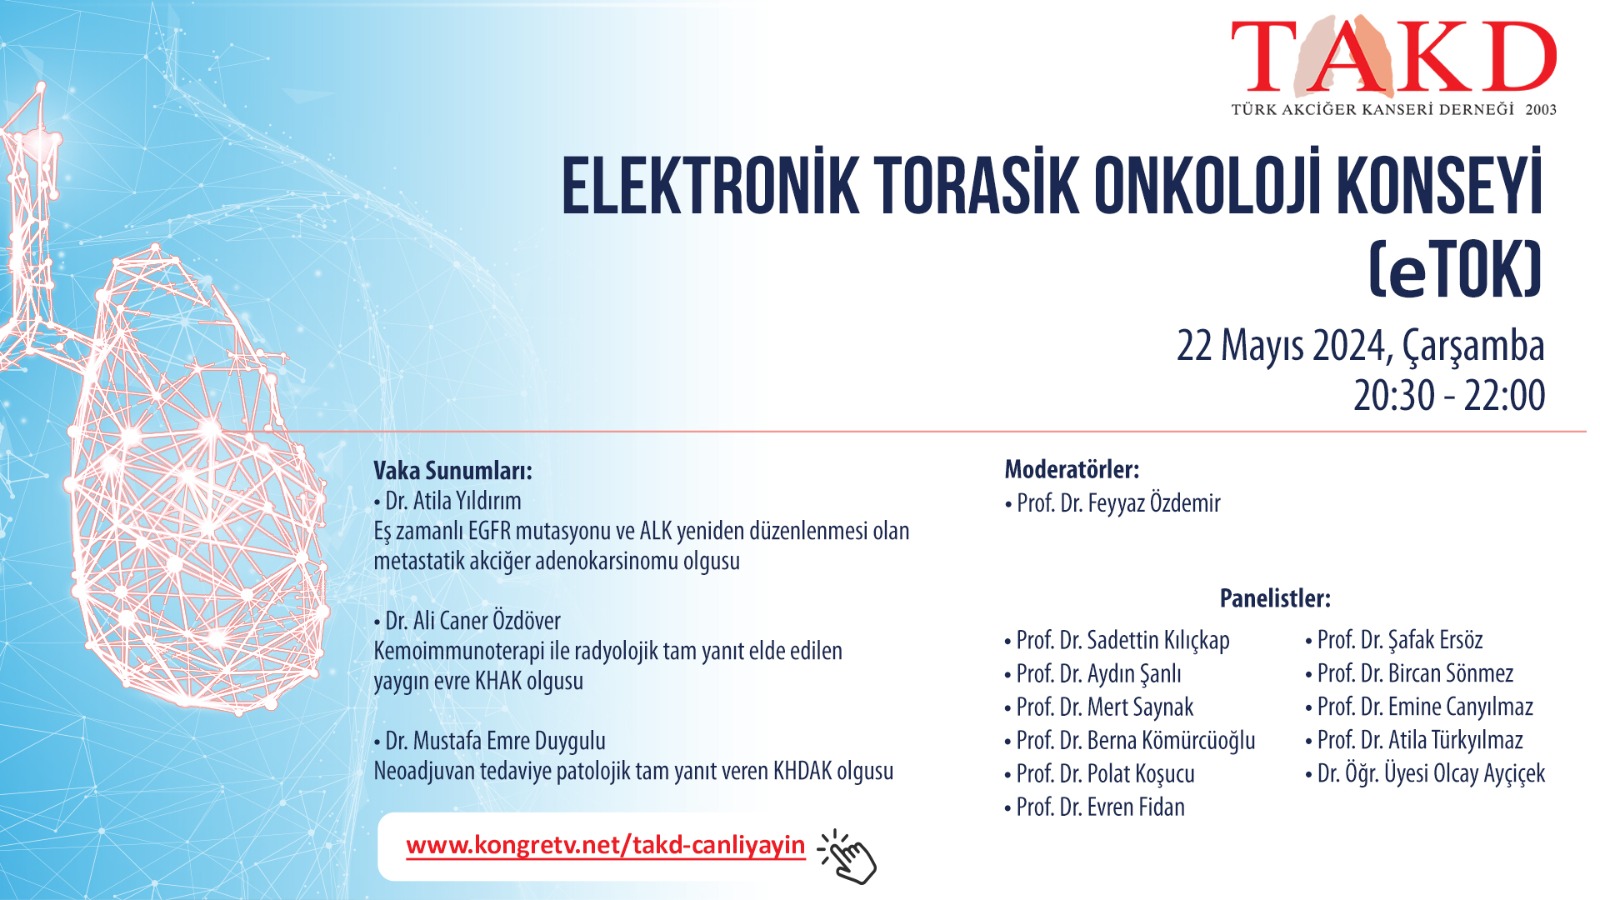 22 Mayıs 2024 , Elektronik Torasik Onkoloji Konseyi (eTOK)